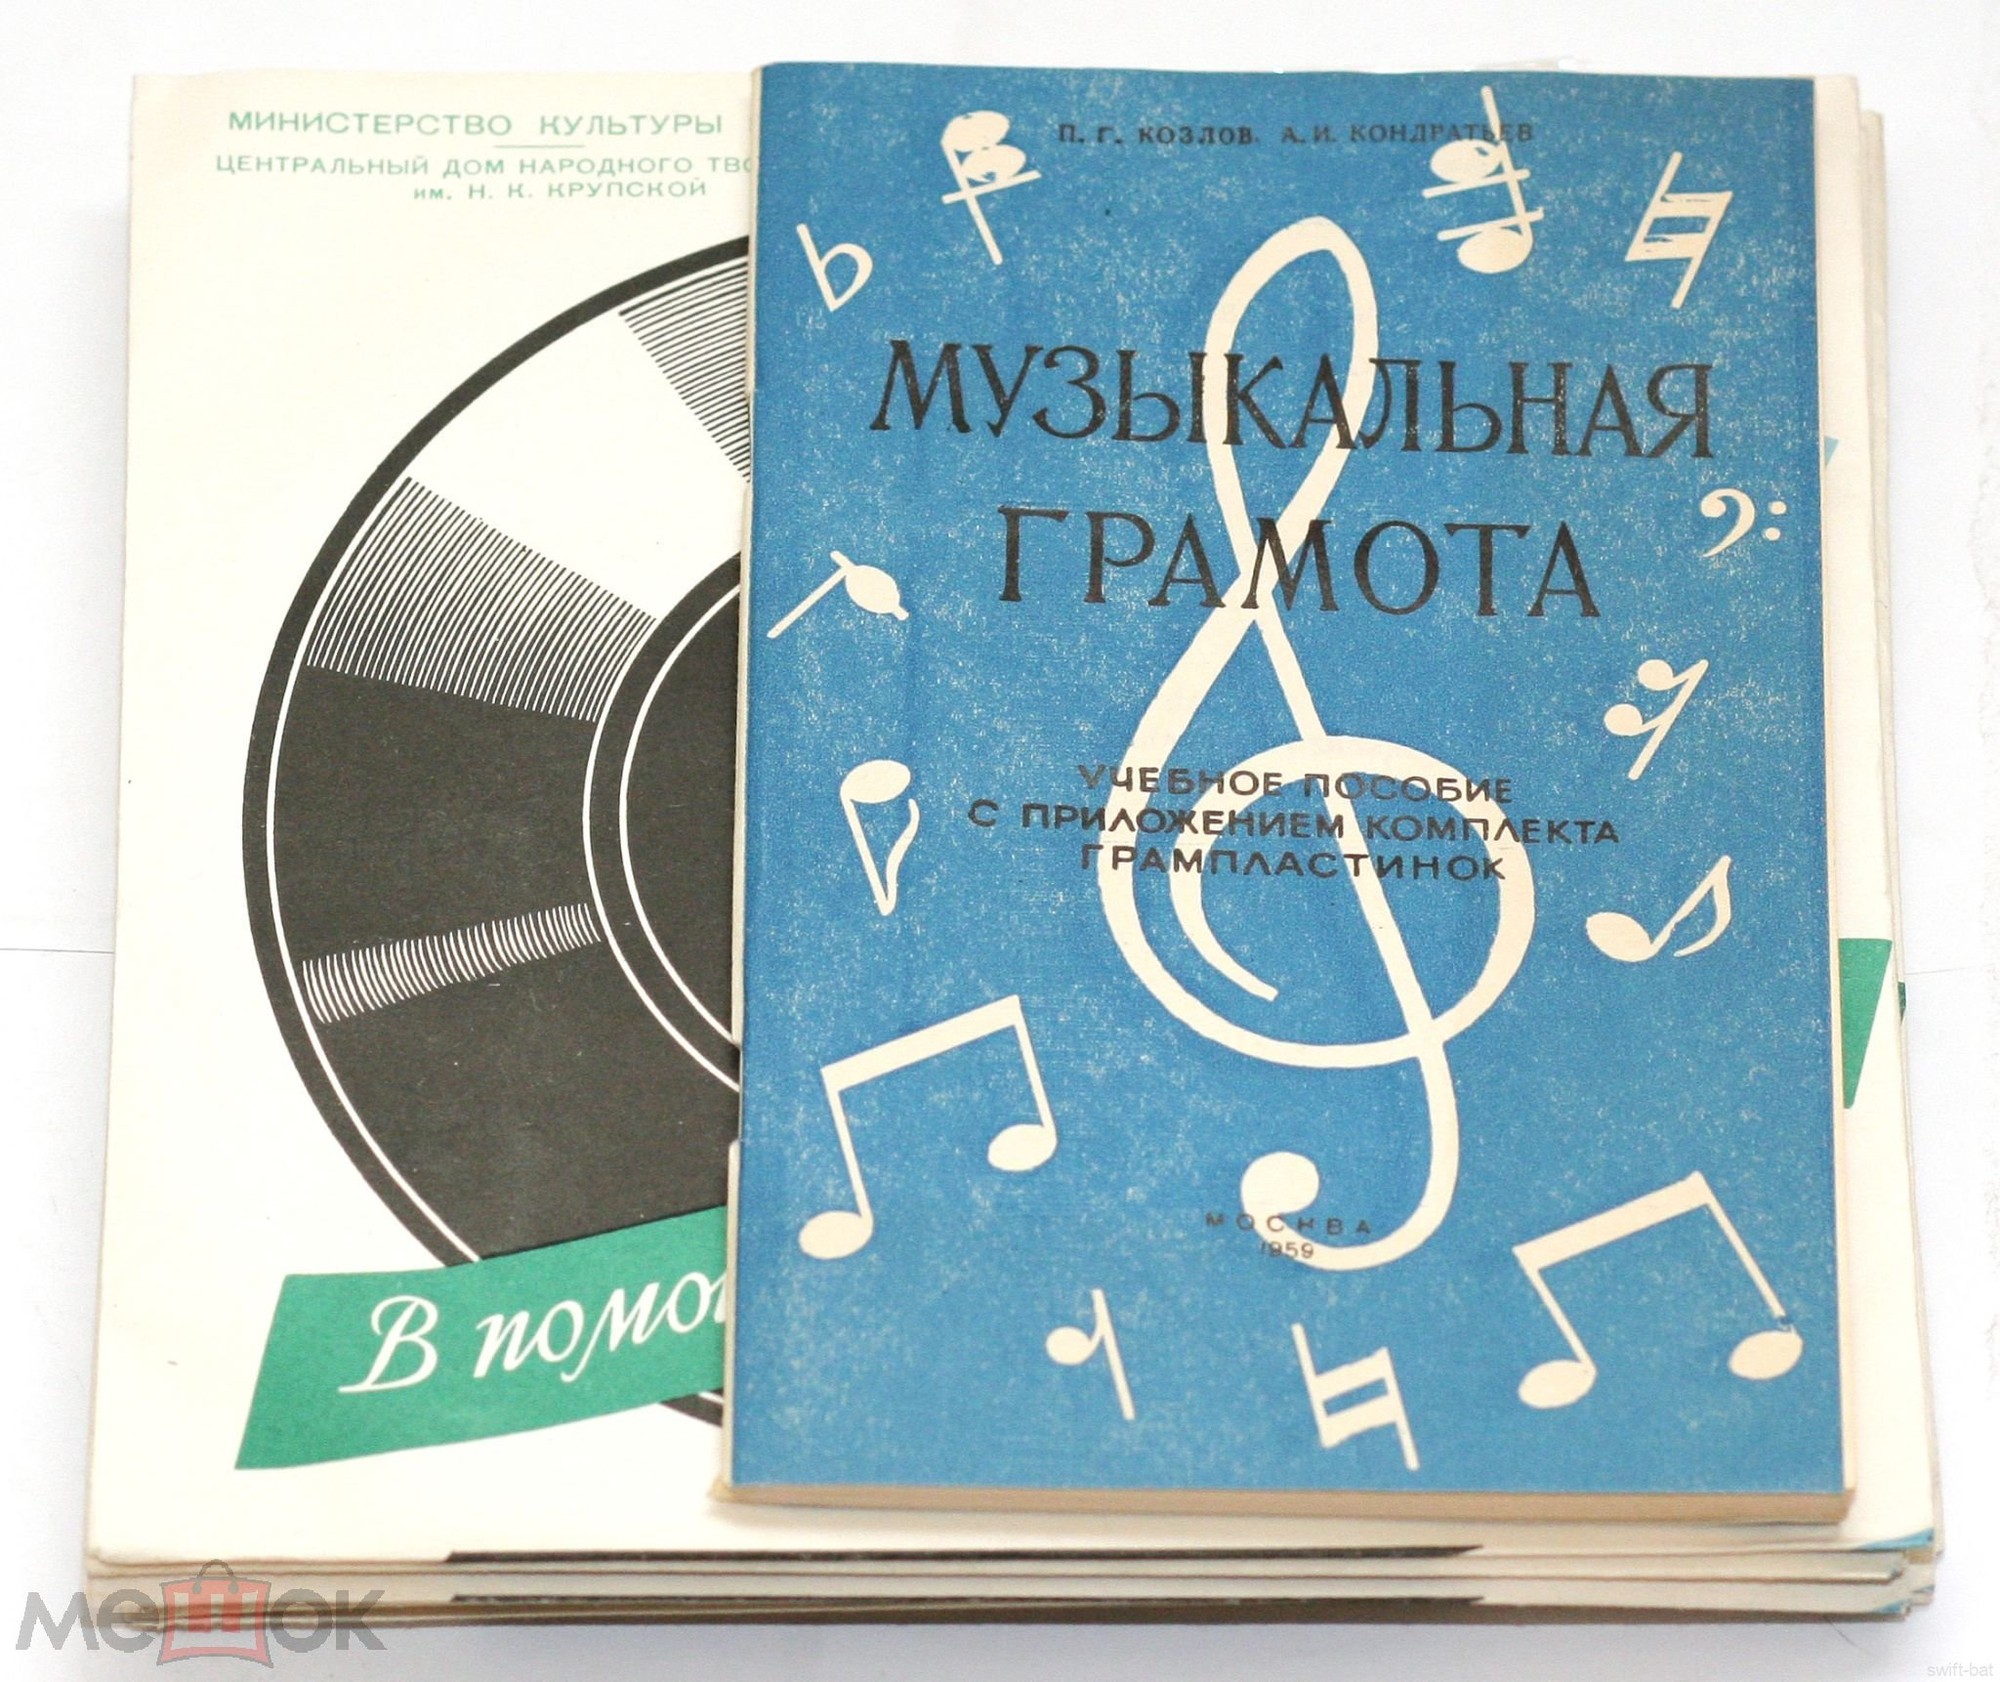 Комплект грампластинок к пособию: П. Г. Козлов, А. И. Кондратьев - Музыкальная Грамота